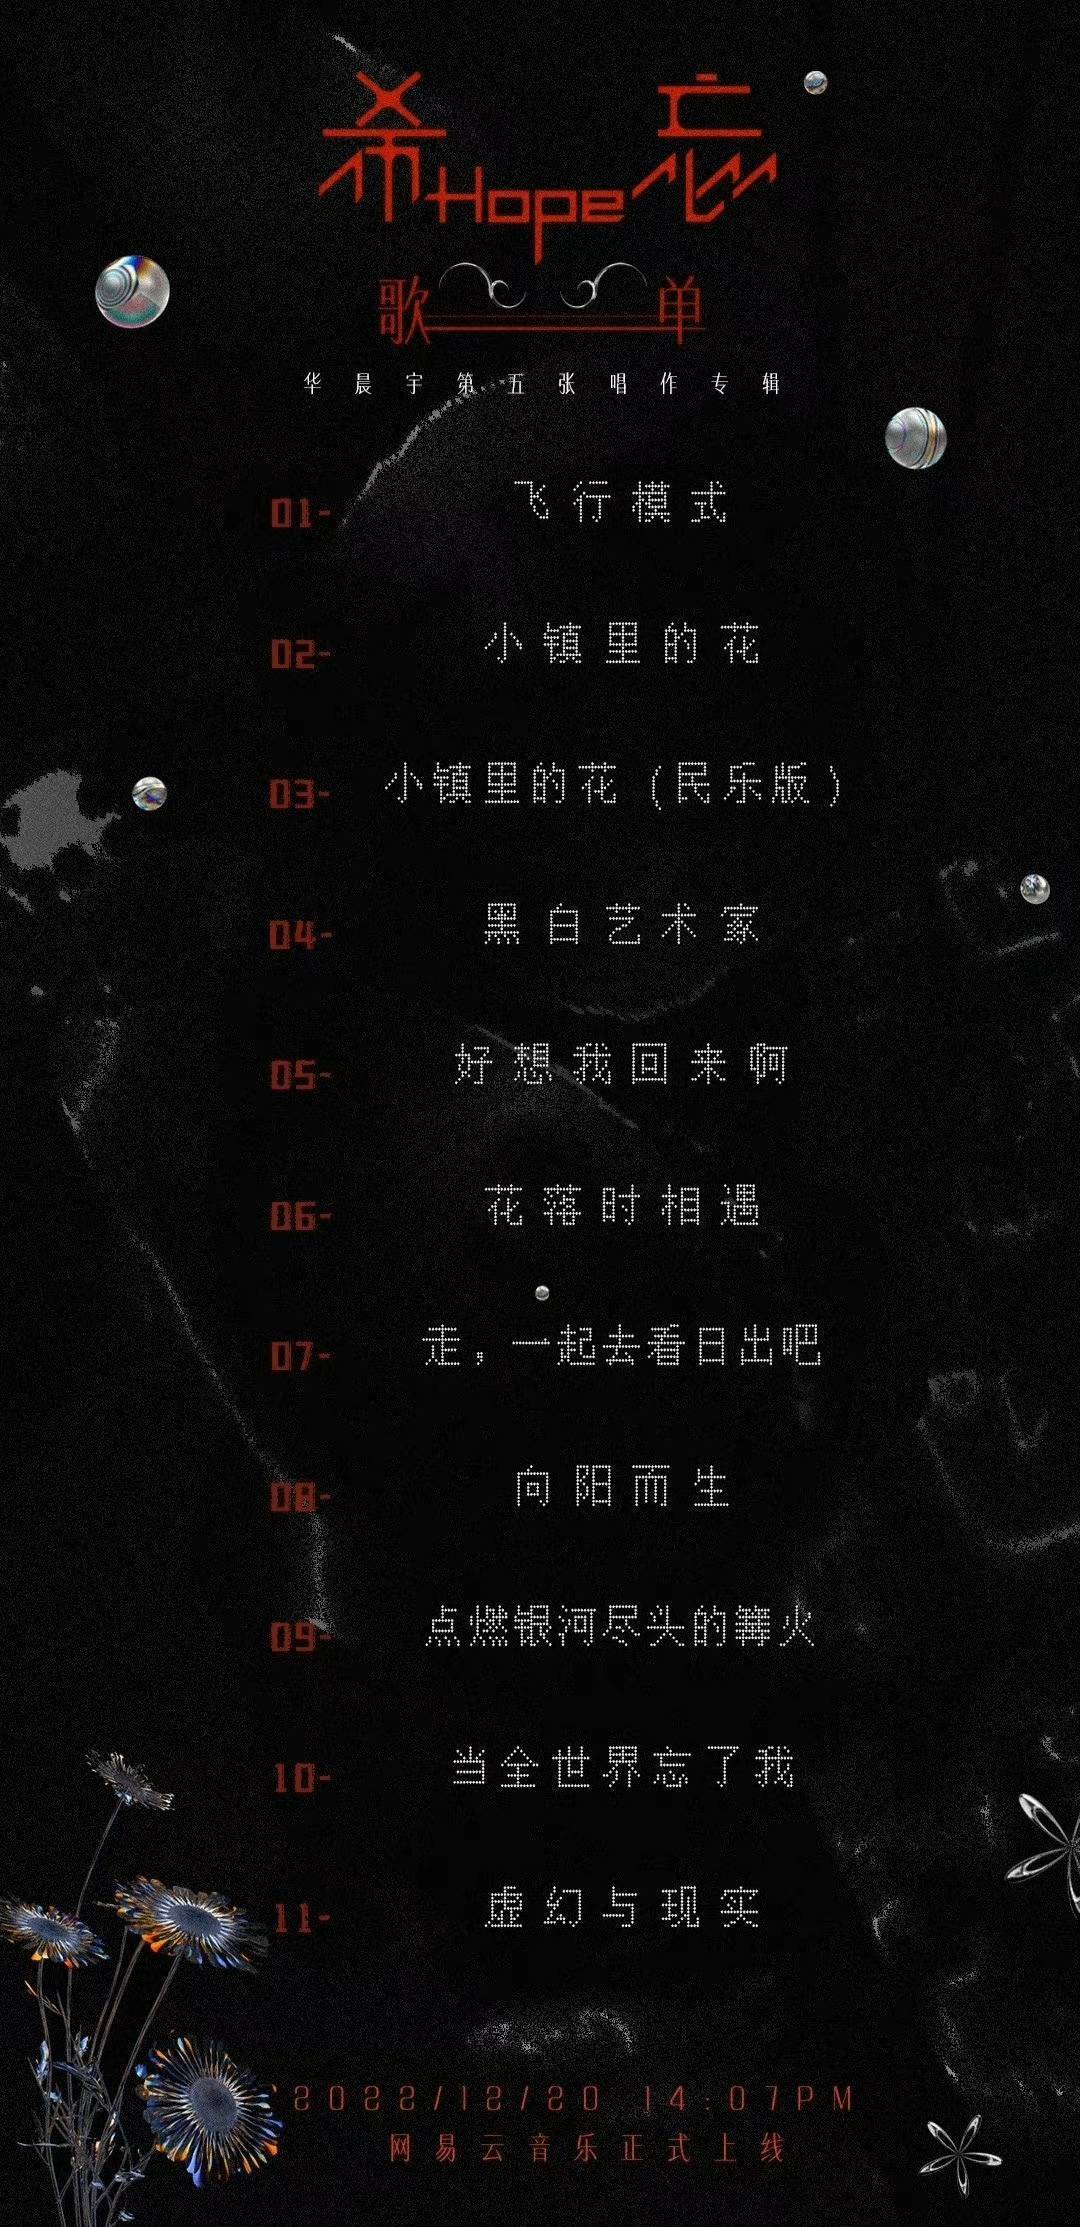 苹果11内测版歌曲名字:华晨宇专辑《希忘Hope》歌单曝光！11首歌风格多变，期待明天上线